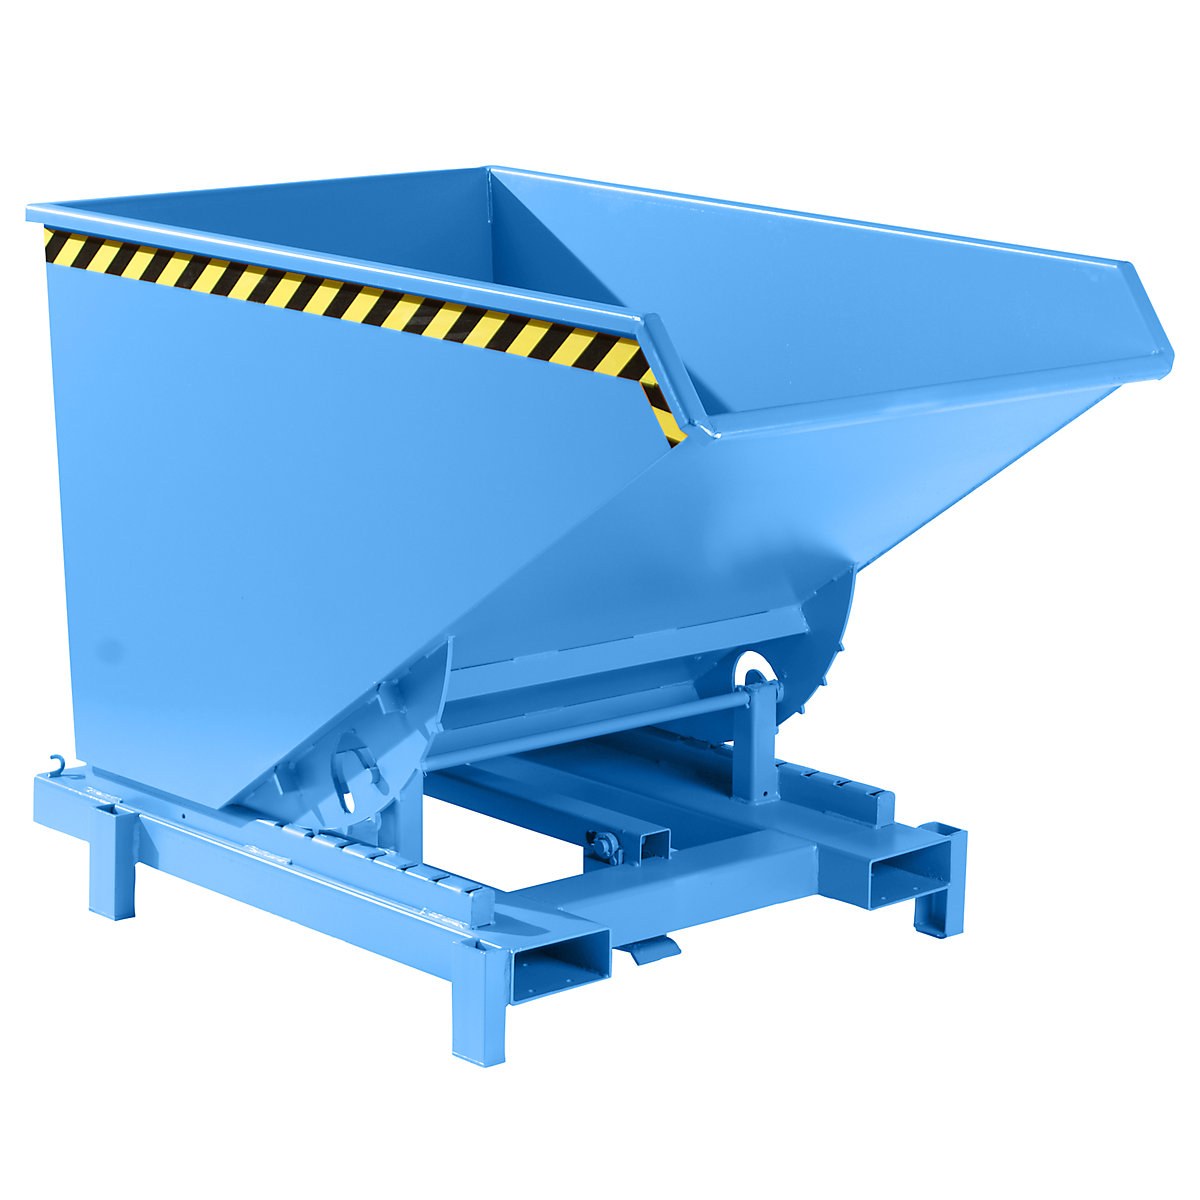 Schwerlast-Kippbehälter eurokraft pro, Volumen 1,2 m³, Traglast 4000 kg, blau RAL 5012-9